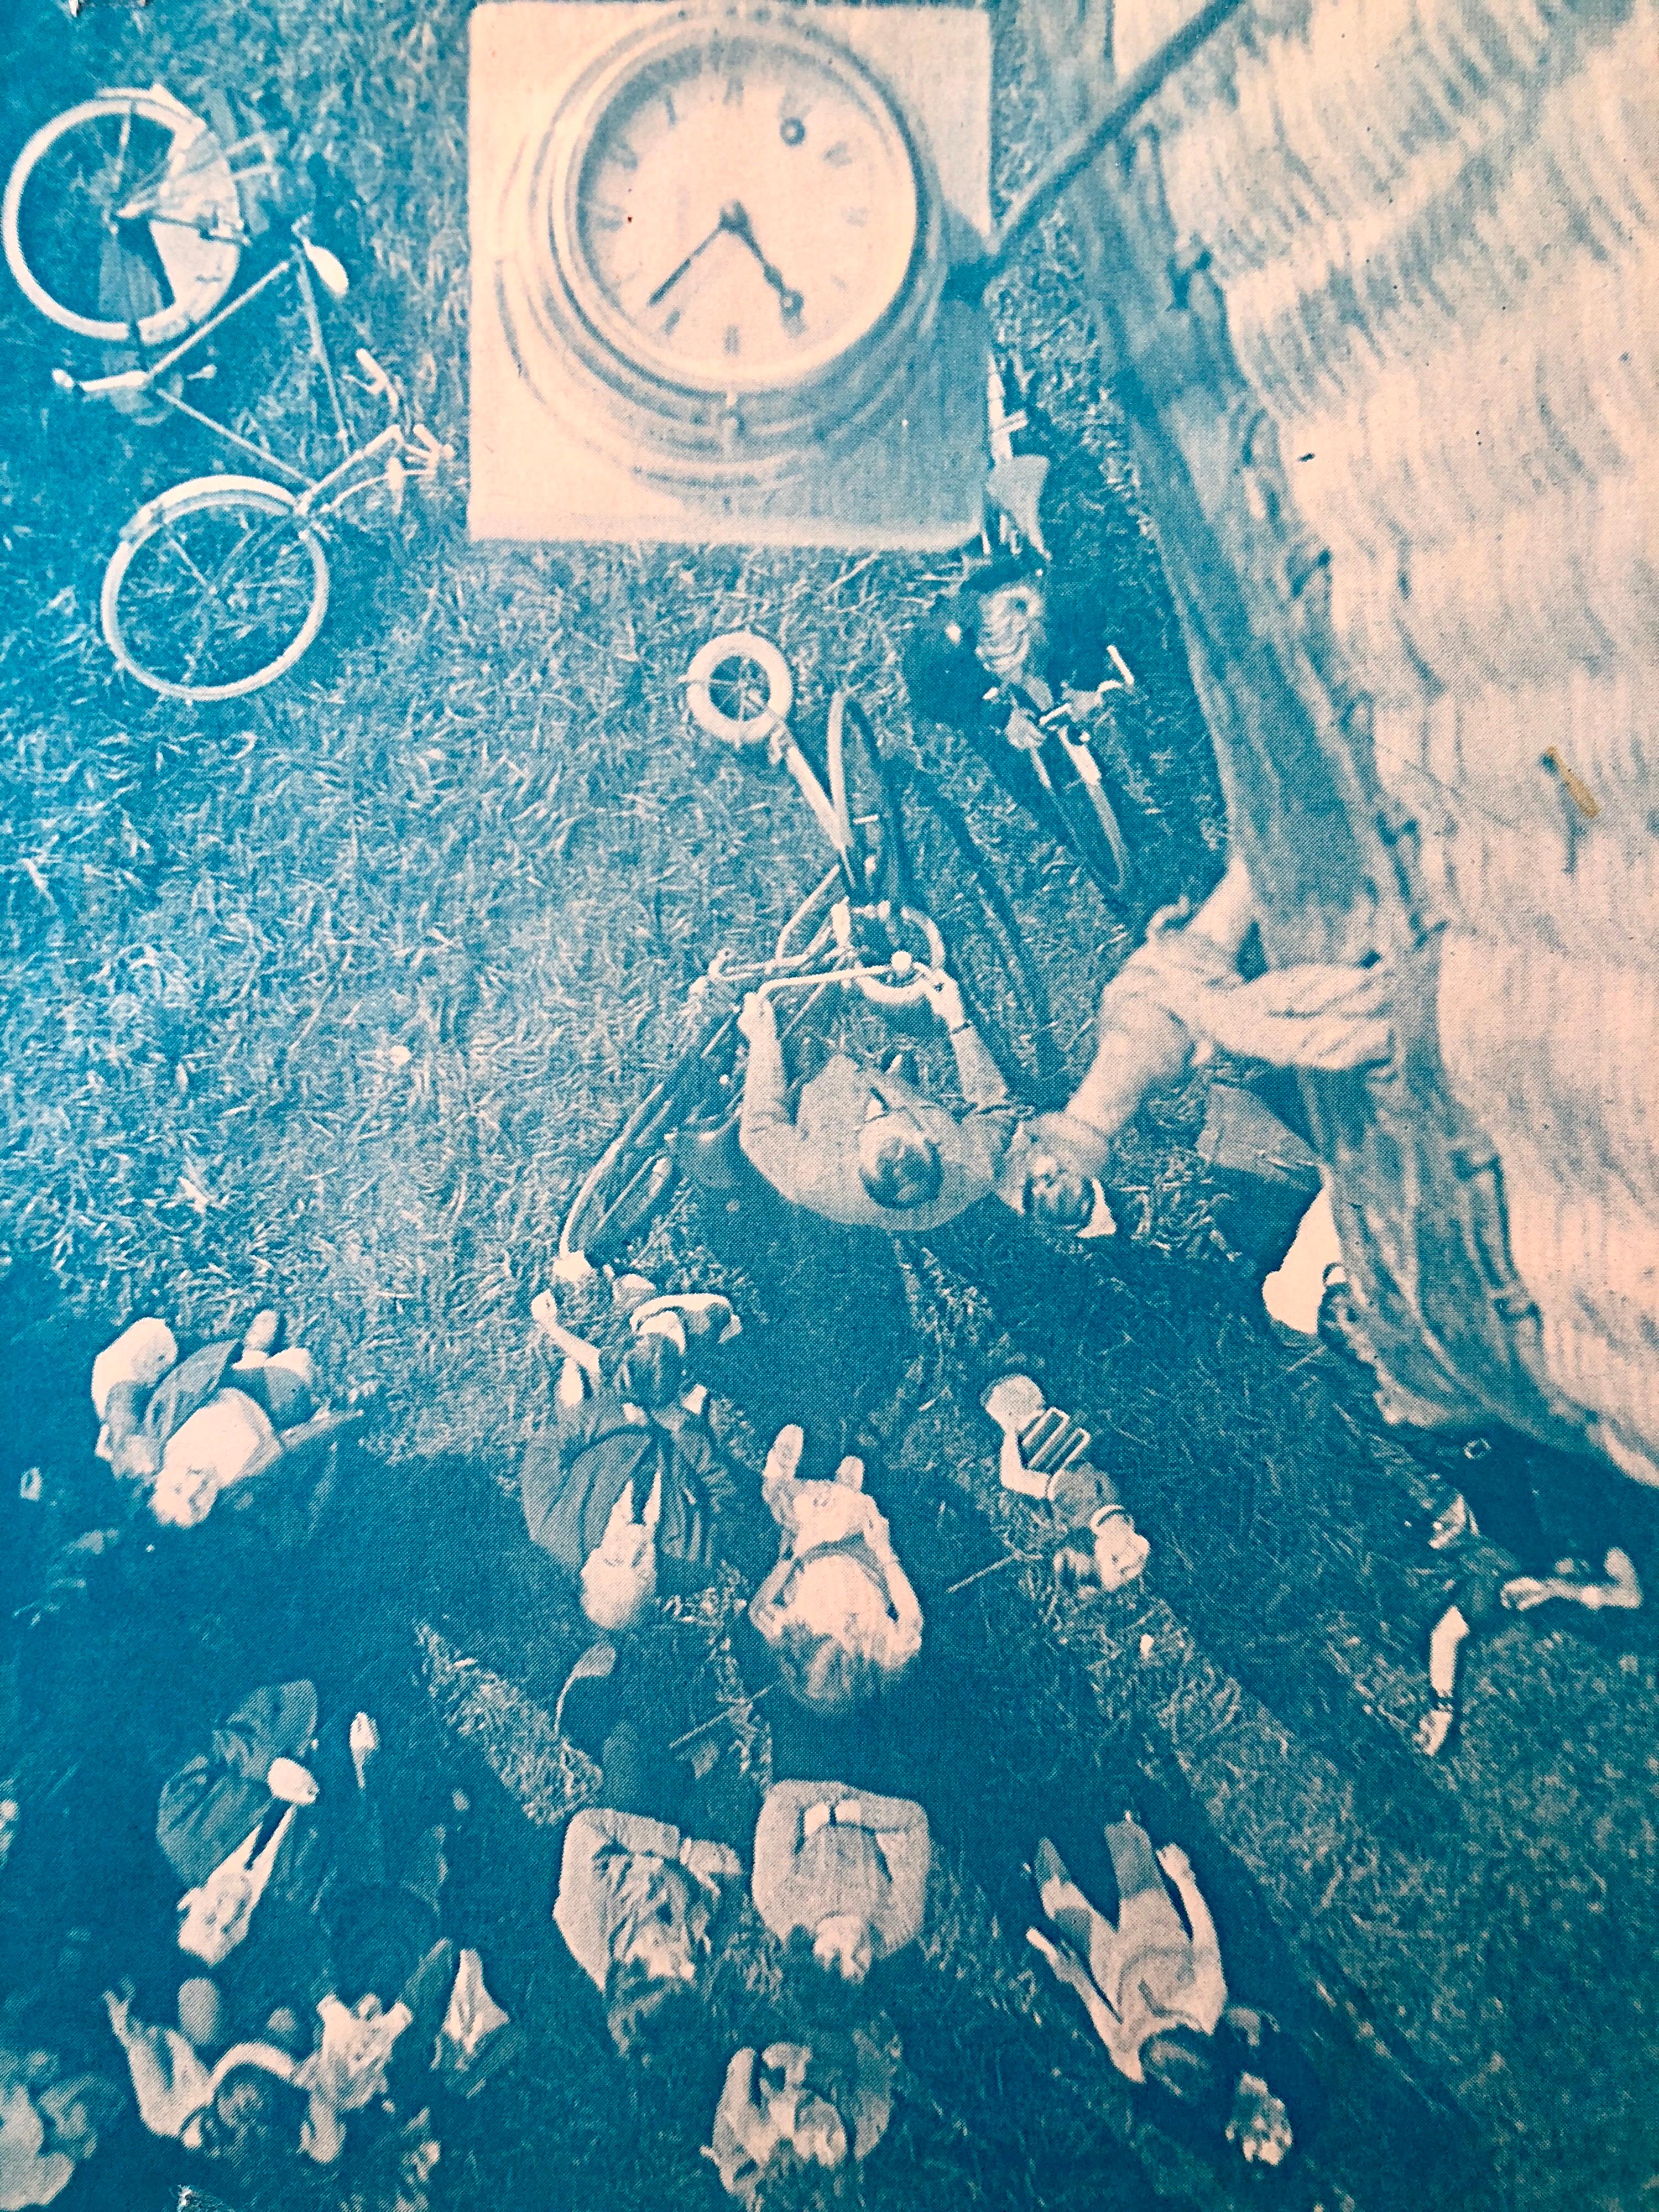 Celle-ci, en rose et turquoise, représente une horloge au-dessus d'un paysage aérien d'Amsterdam avec une bicyclette et s'intitule Lift Off Amsterdam.
SIMONS, Vera (1920 - 2012)
Vera Artistics était une pionnière germano-américaine de l'aviation,